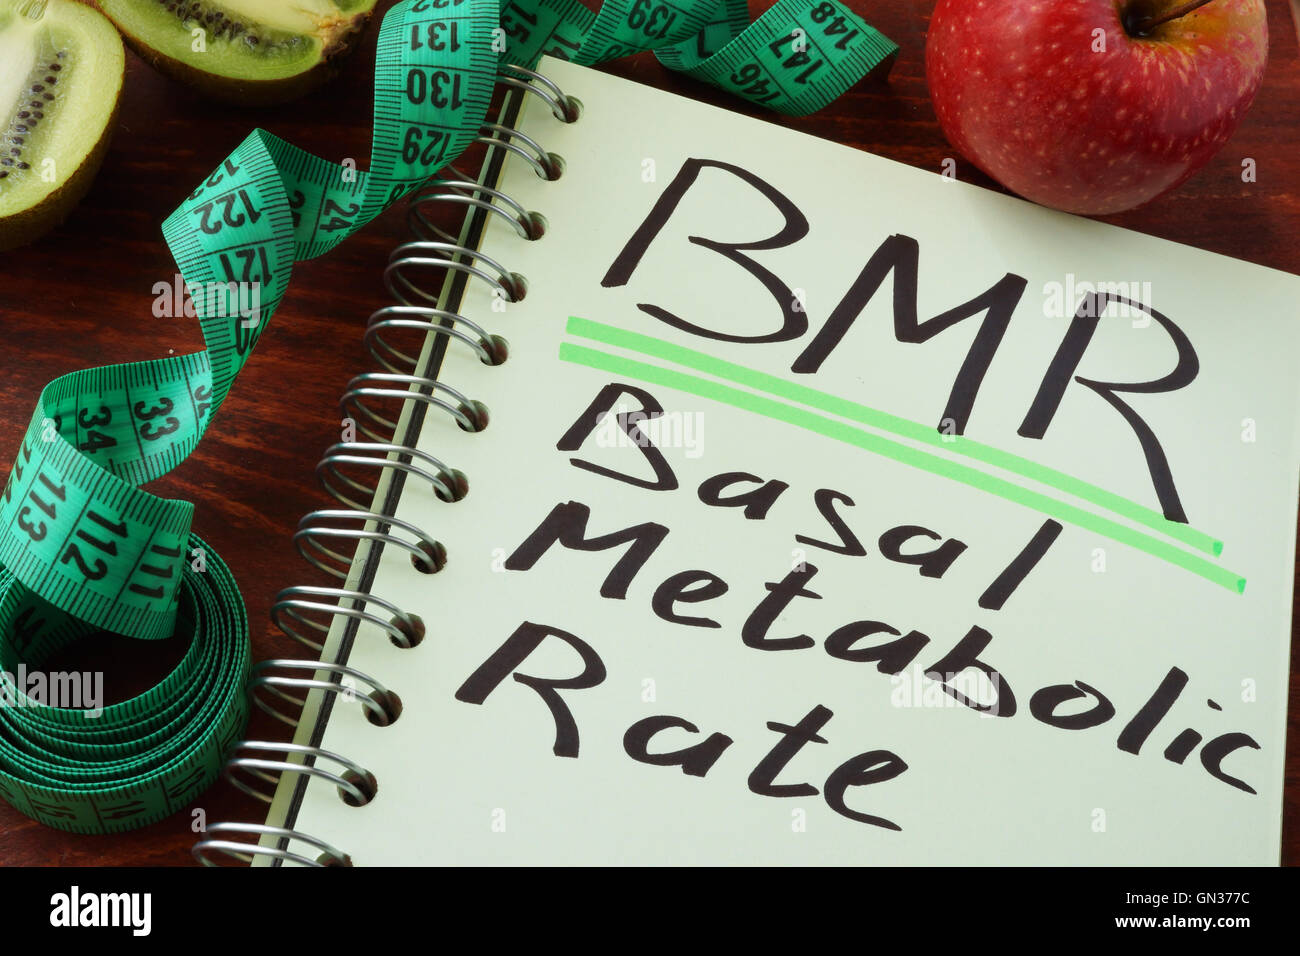 BMR tasa metabólica basal escrita en una hoja de bloc de notas. Foto de stock